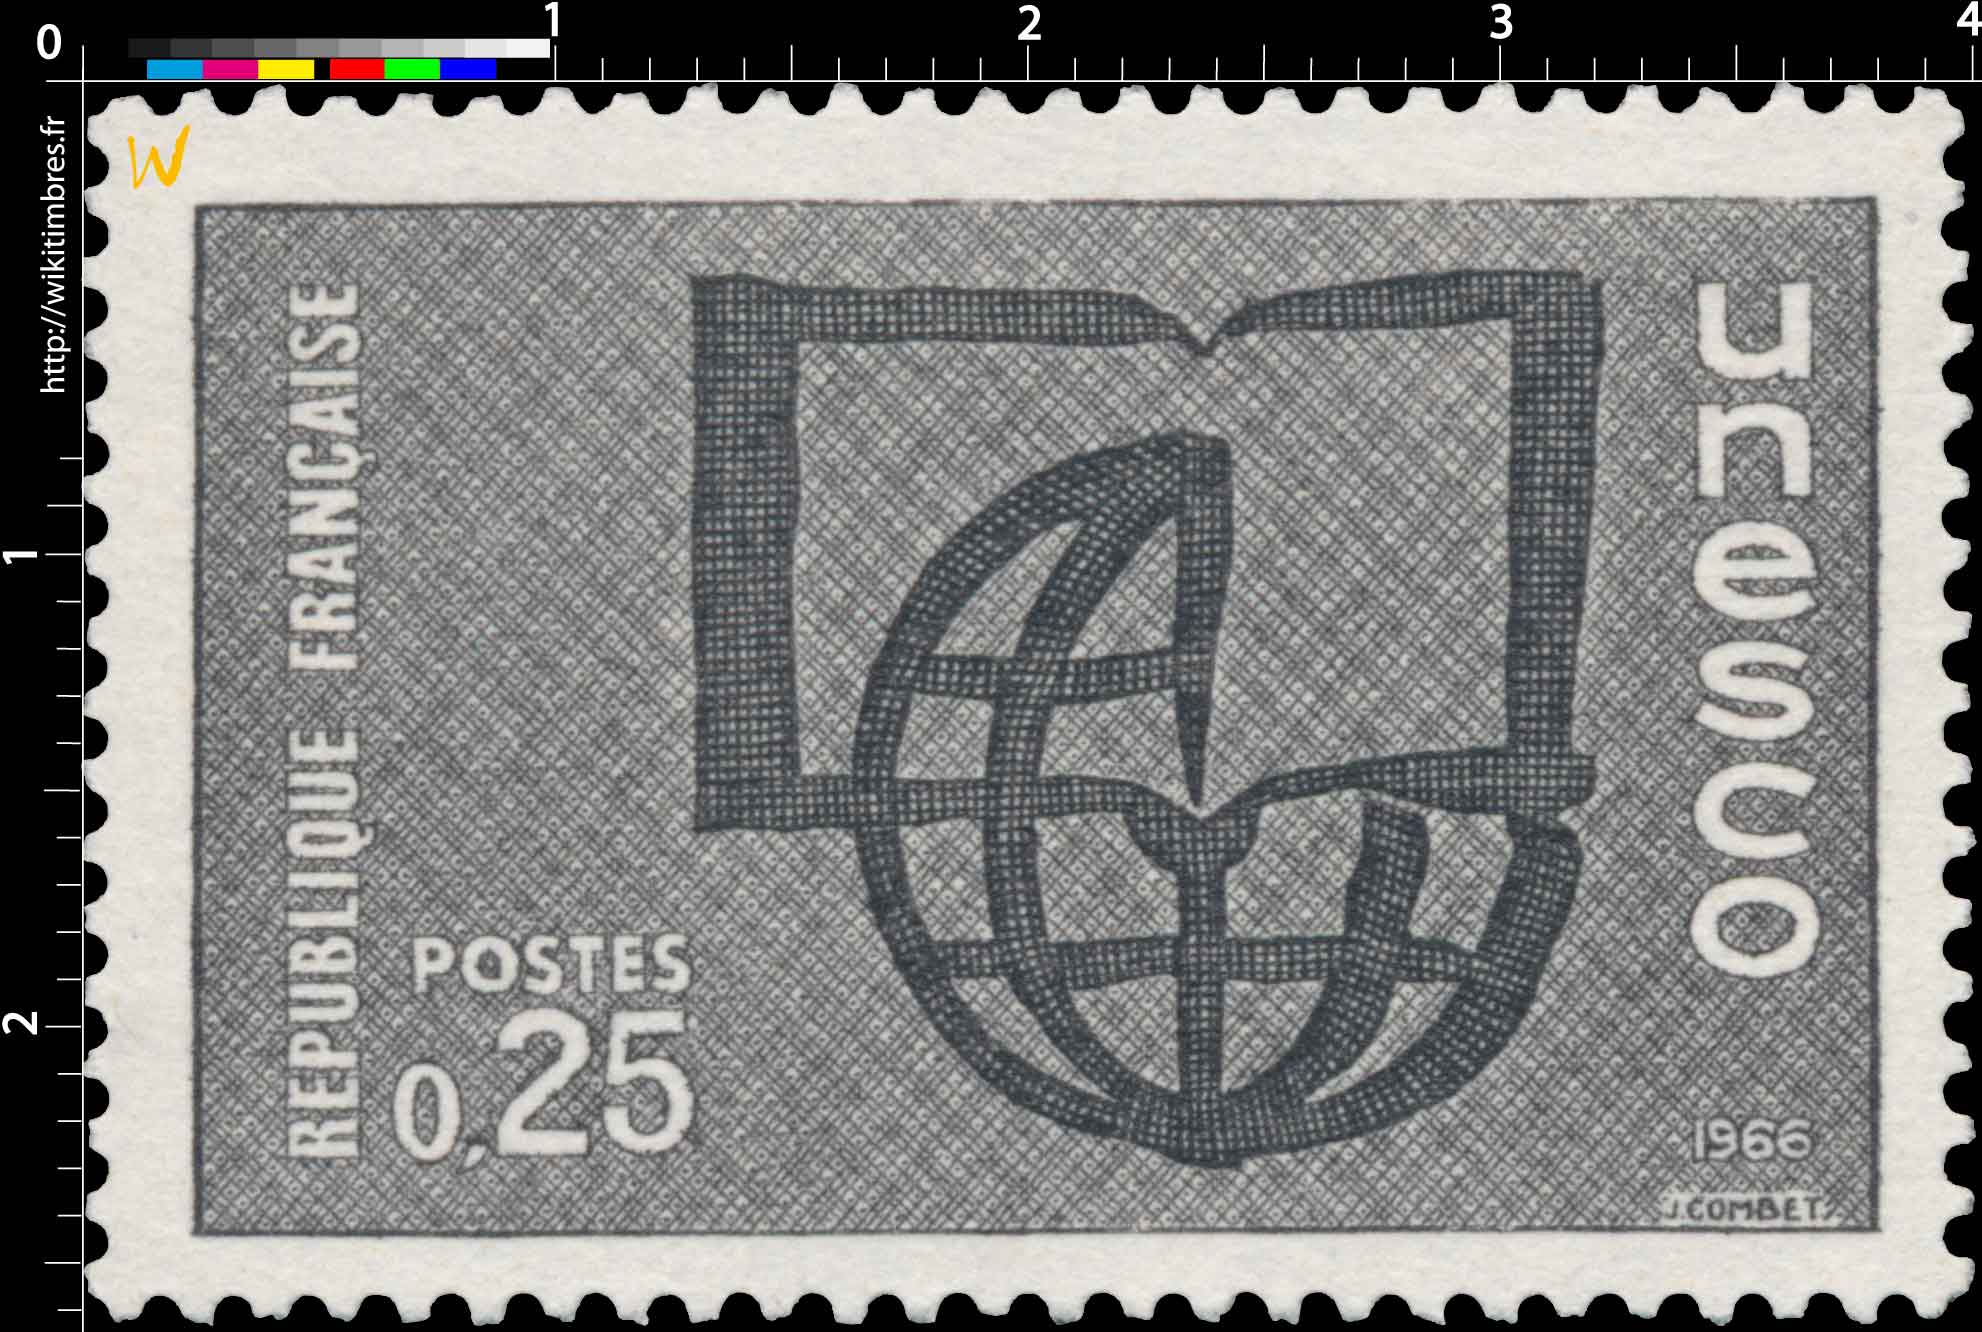 1966 Unesco